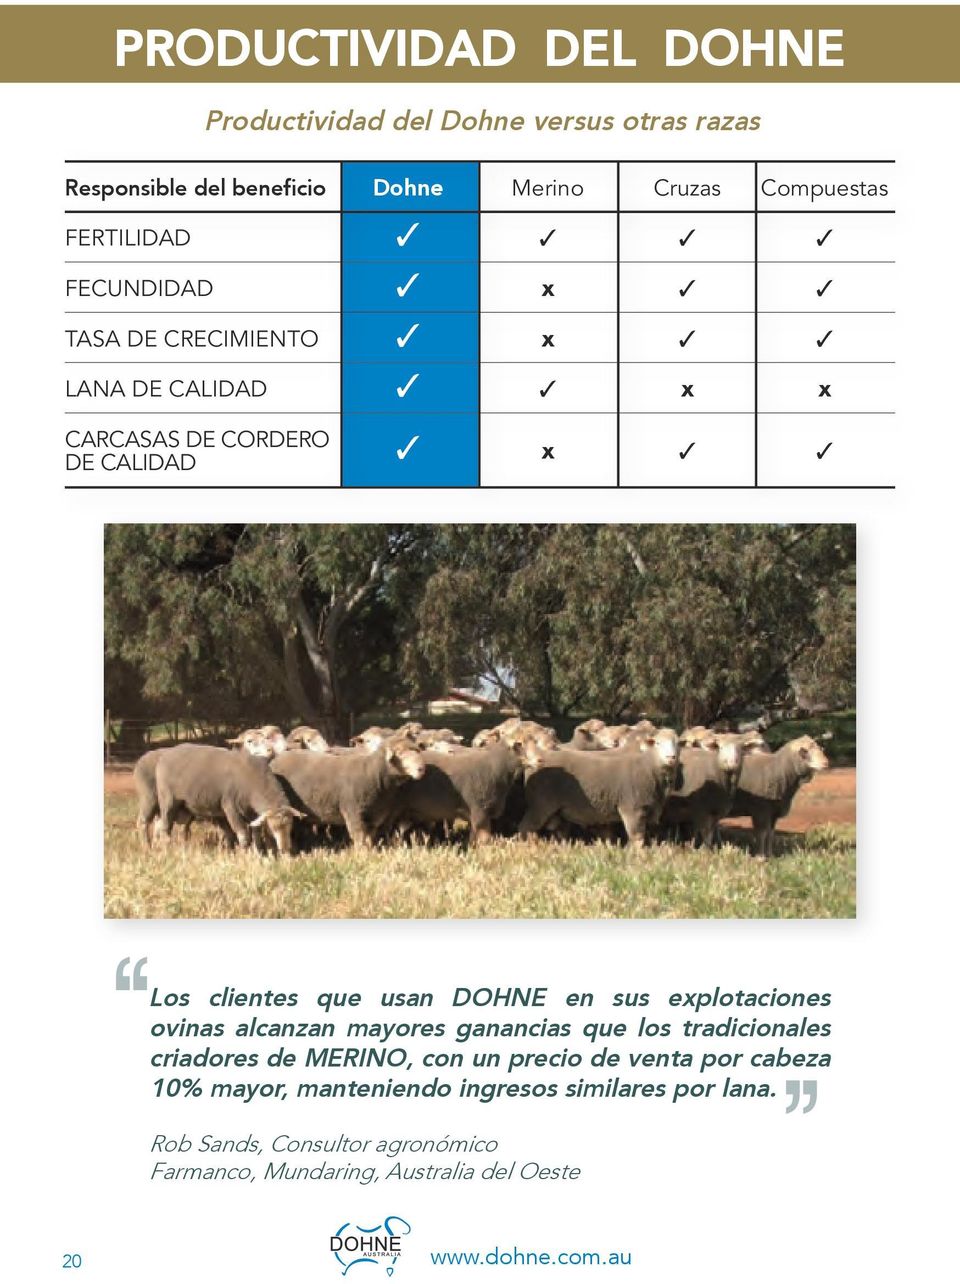 en sus explotaciones ovinas alcanzan mayores ganancias que los tradicionales criadores de MERINO, con un precio de venta por